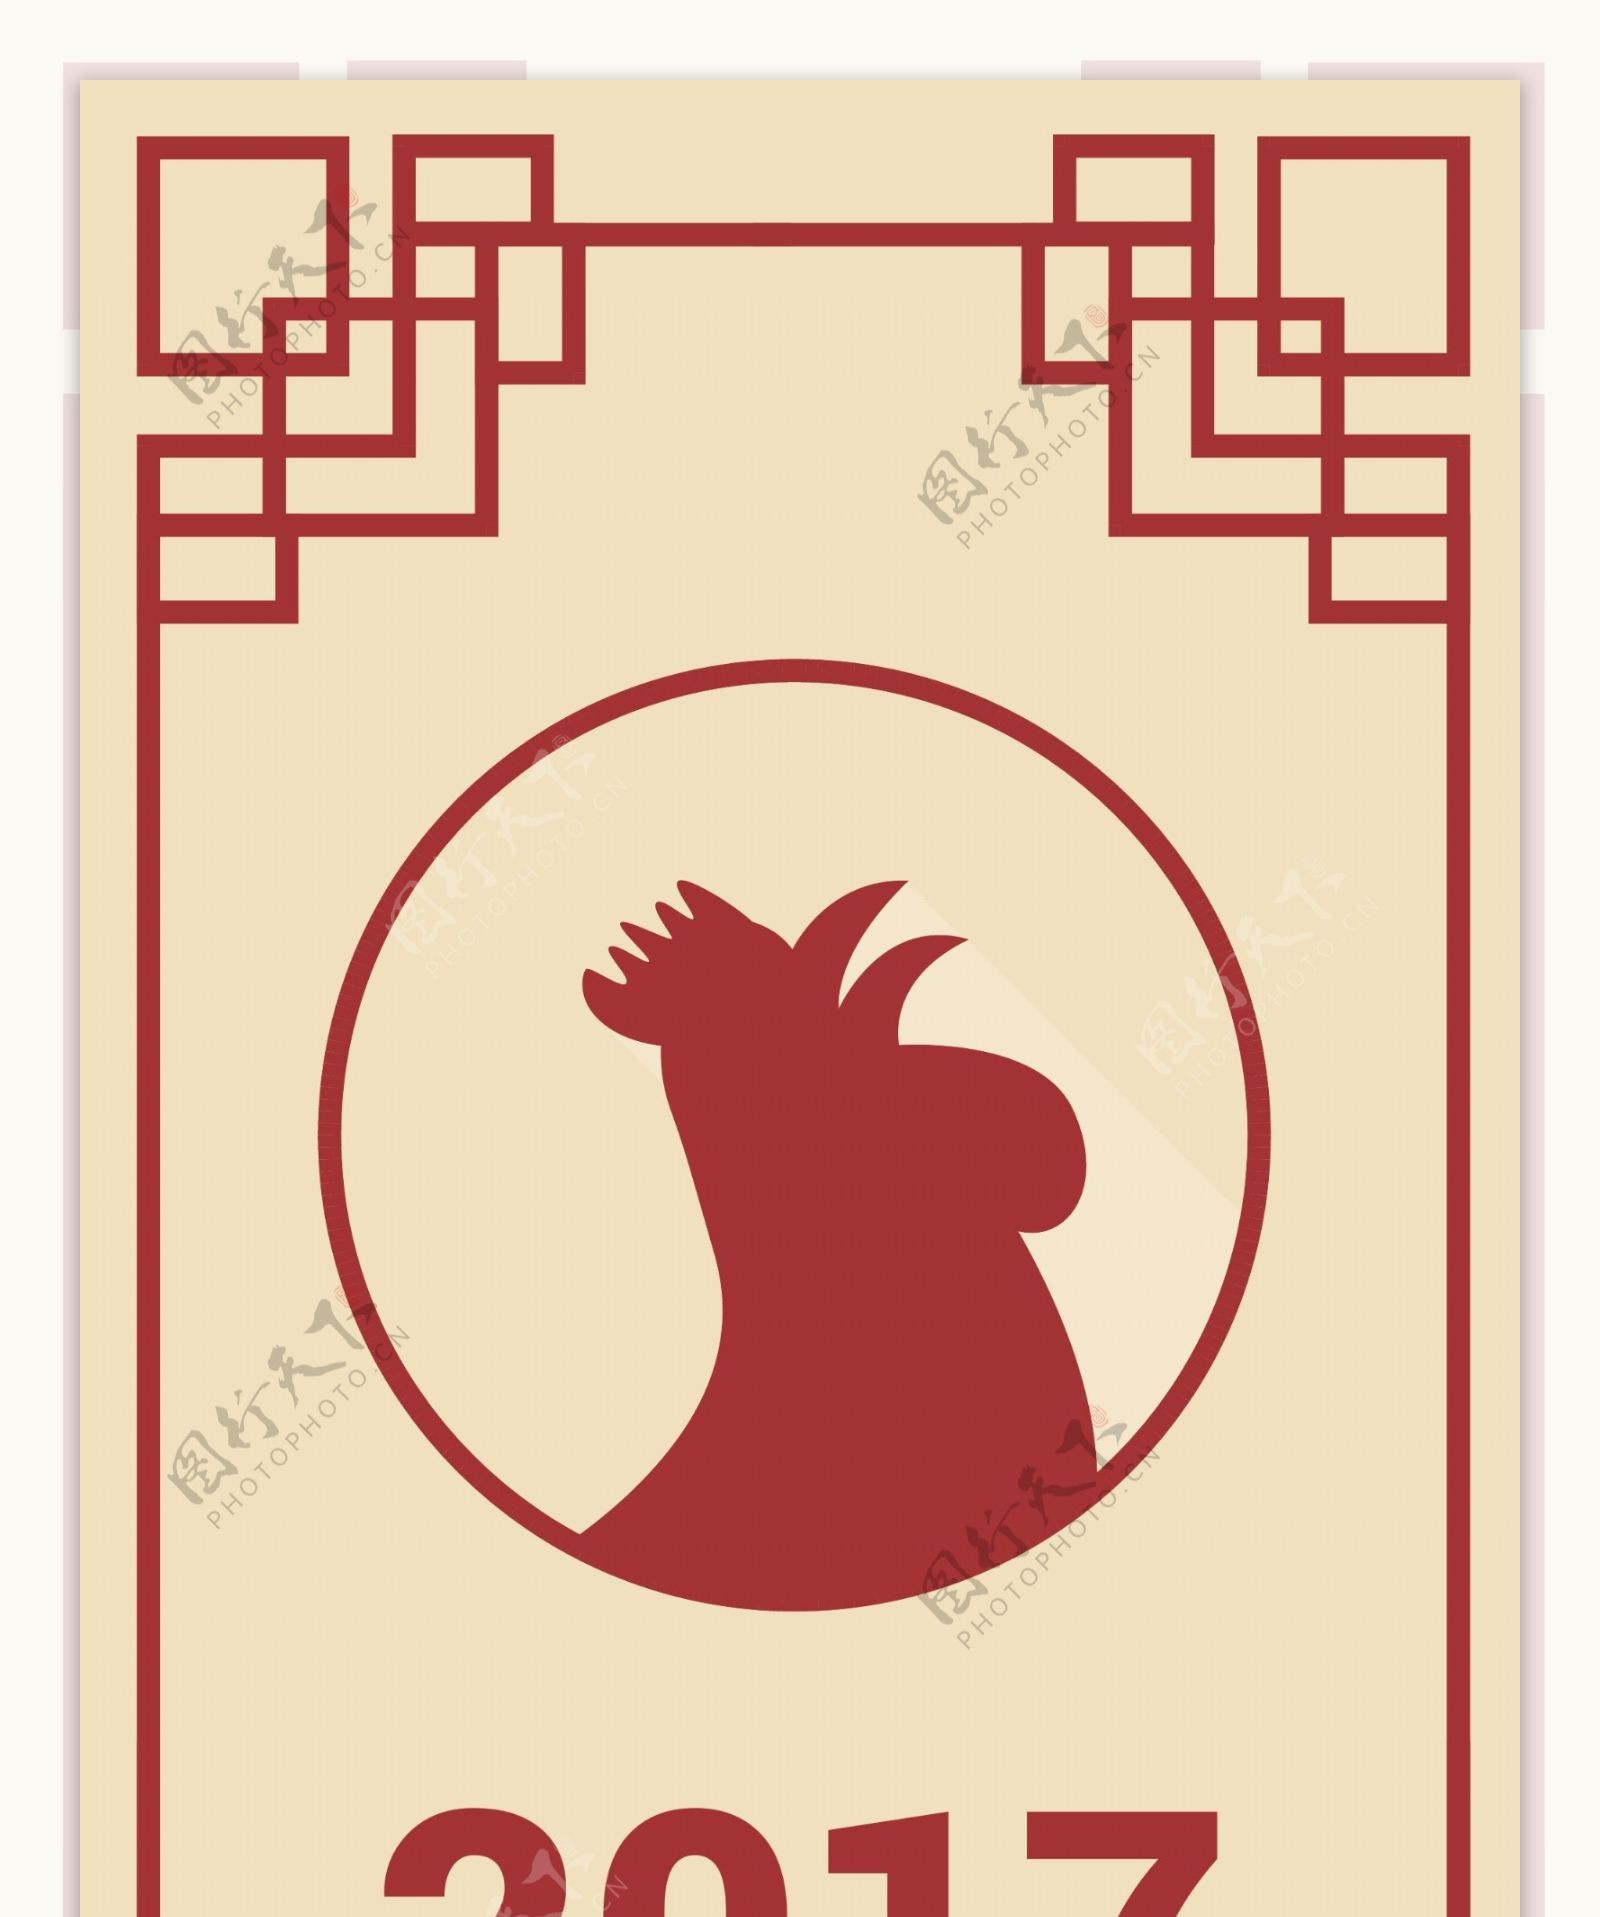 中国新年的横幅与几何框架的公鸡